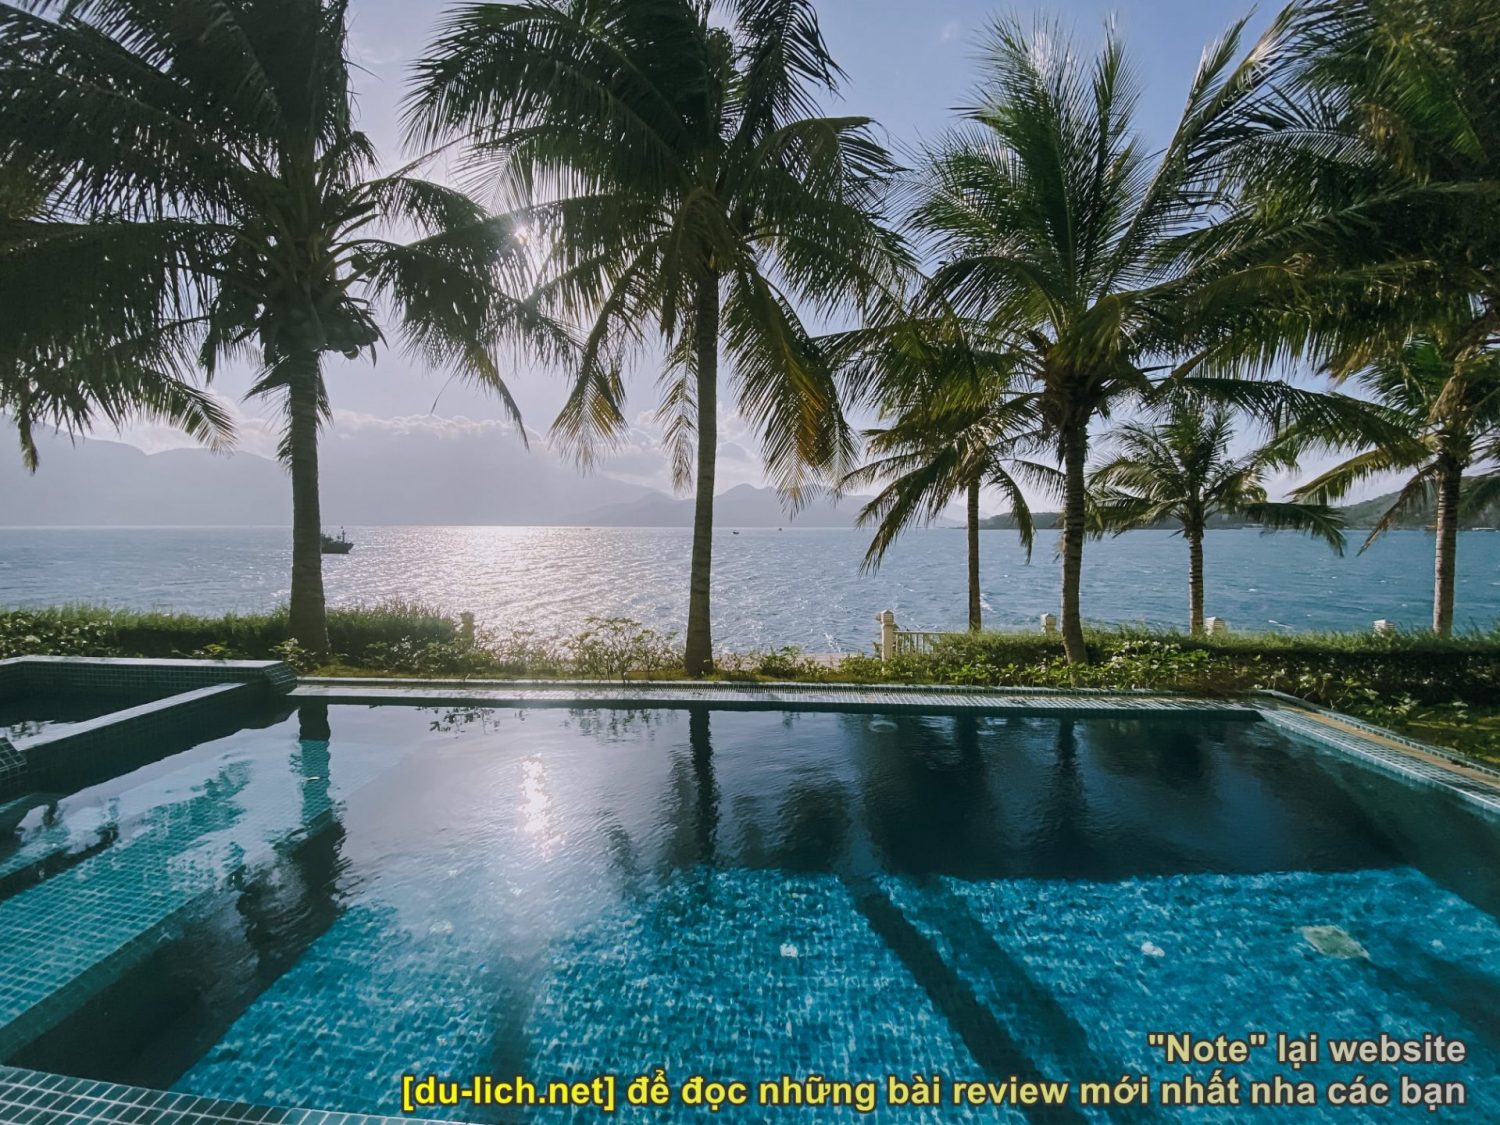 Phong cảnh biển đẹp như mơ. Có nên đi đảo Hòn Tằm Nha Trang không?